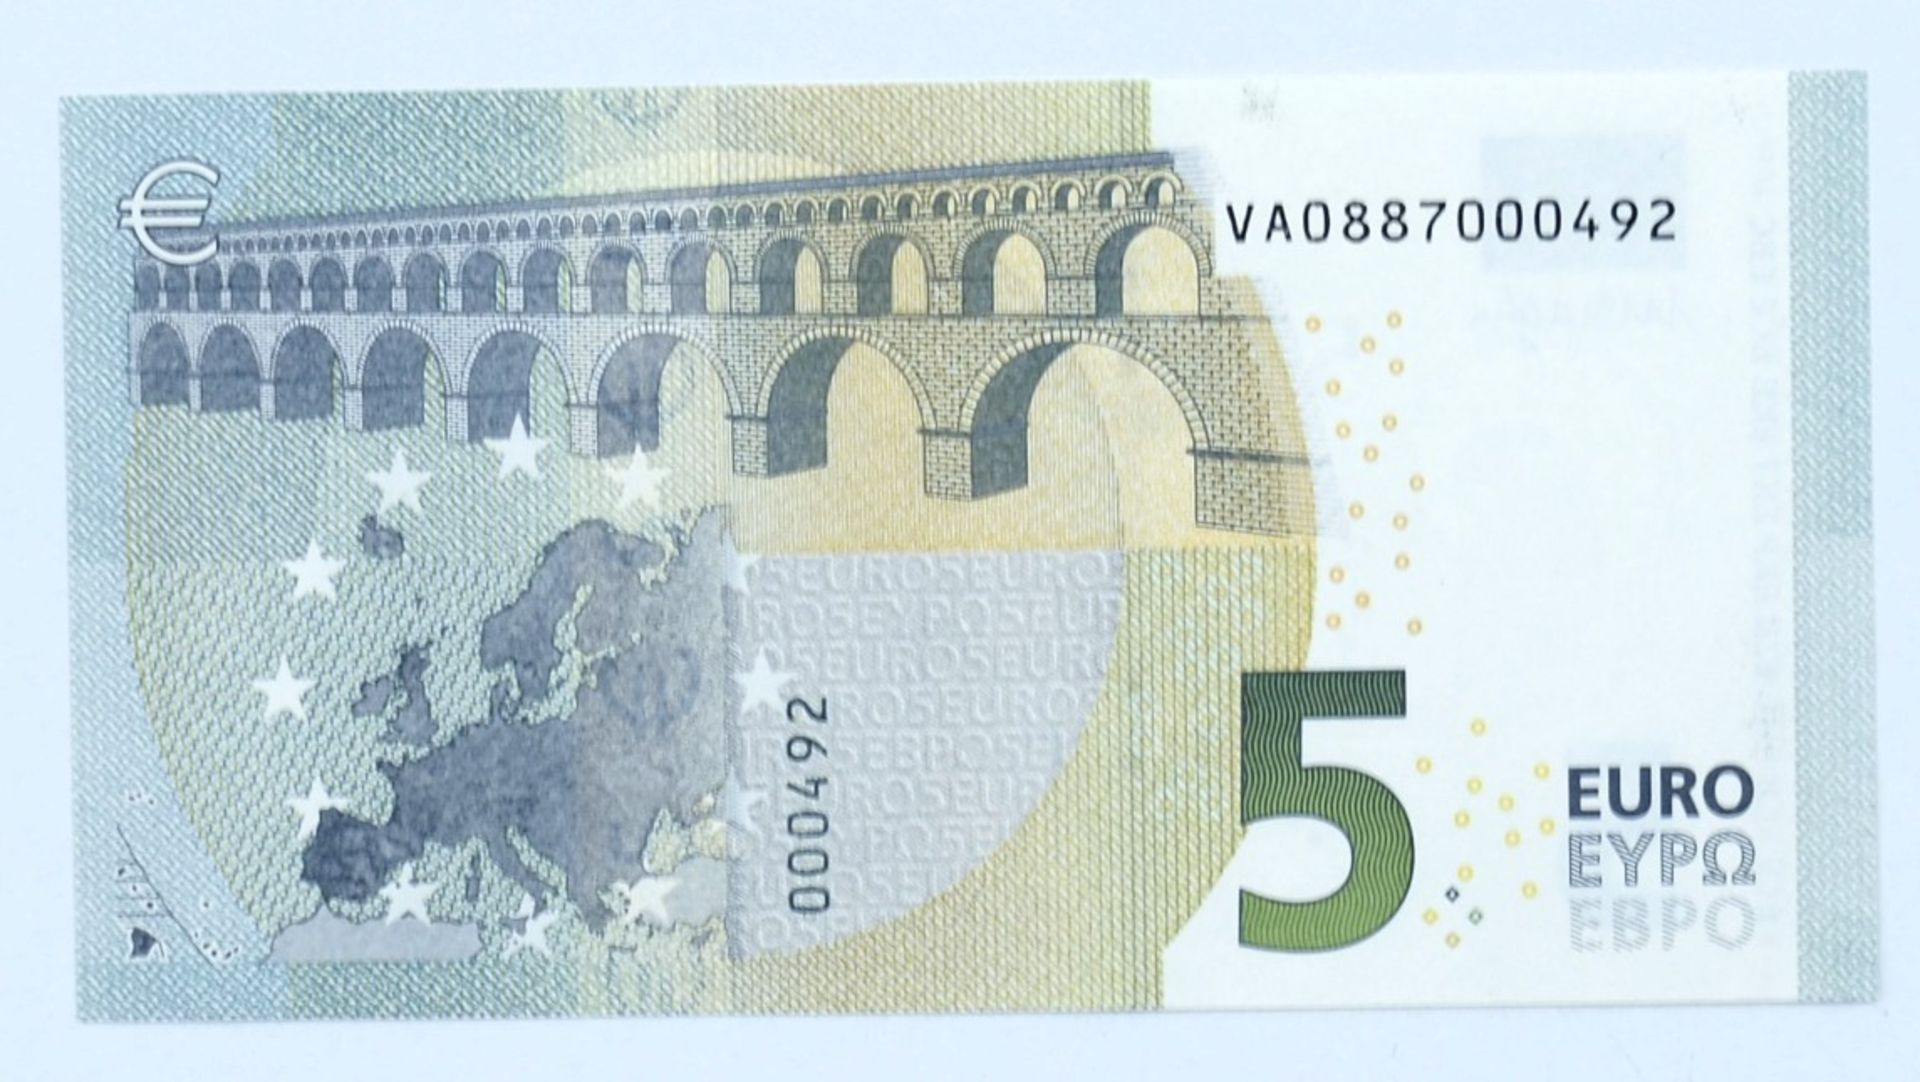 5 Euro - Banknote, Signatur: Draghi. Erhaltung: kassenfrisch. - Bild 2 aus 2